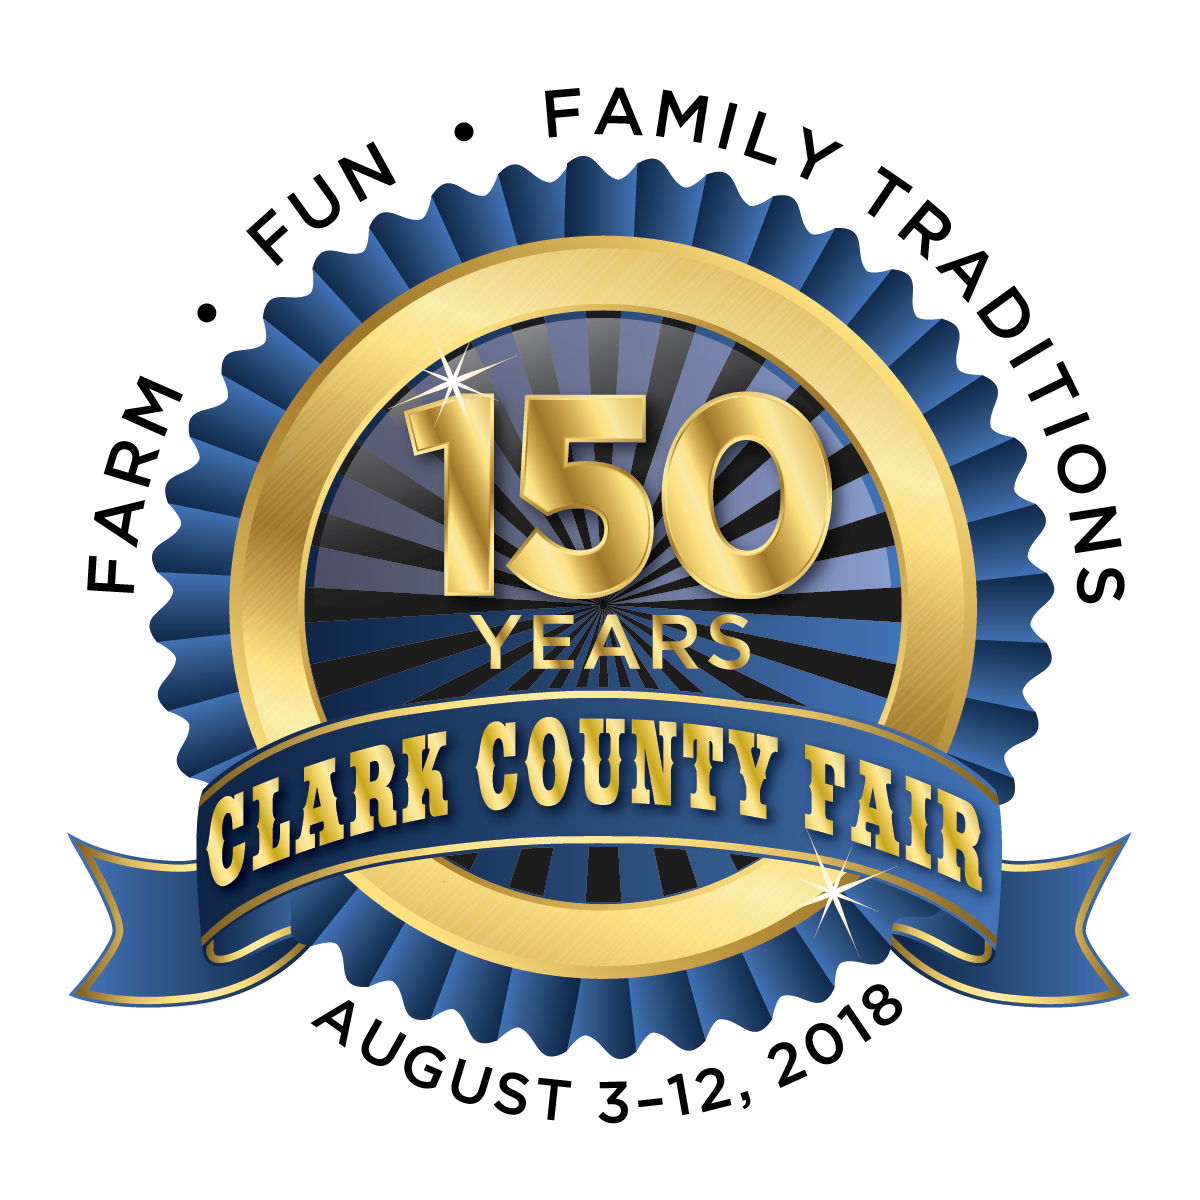 Clark County Fair 150th Year